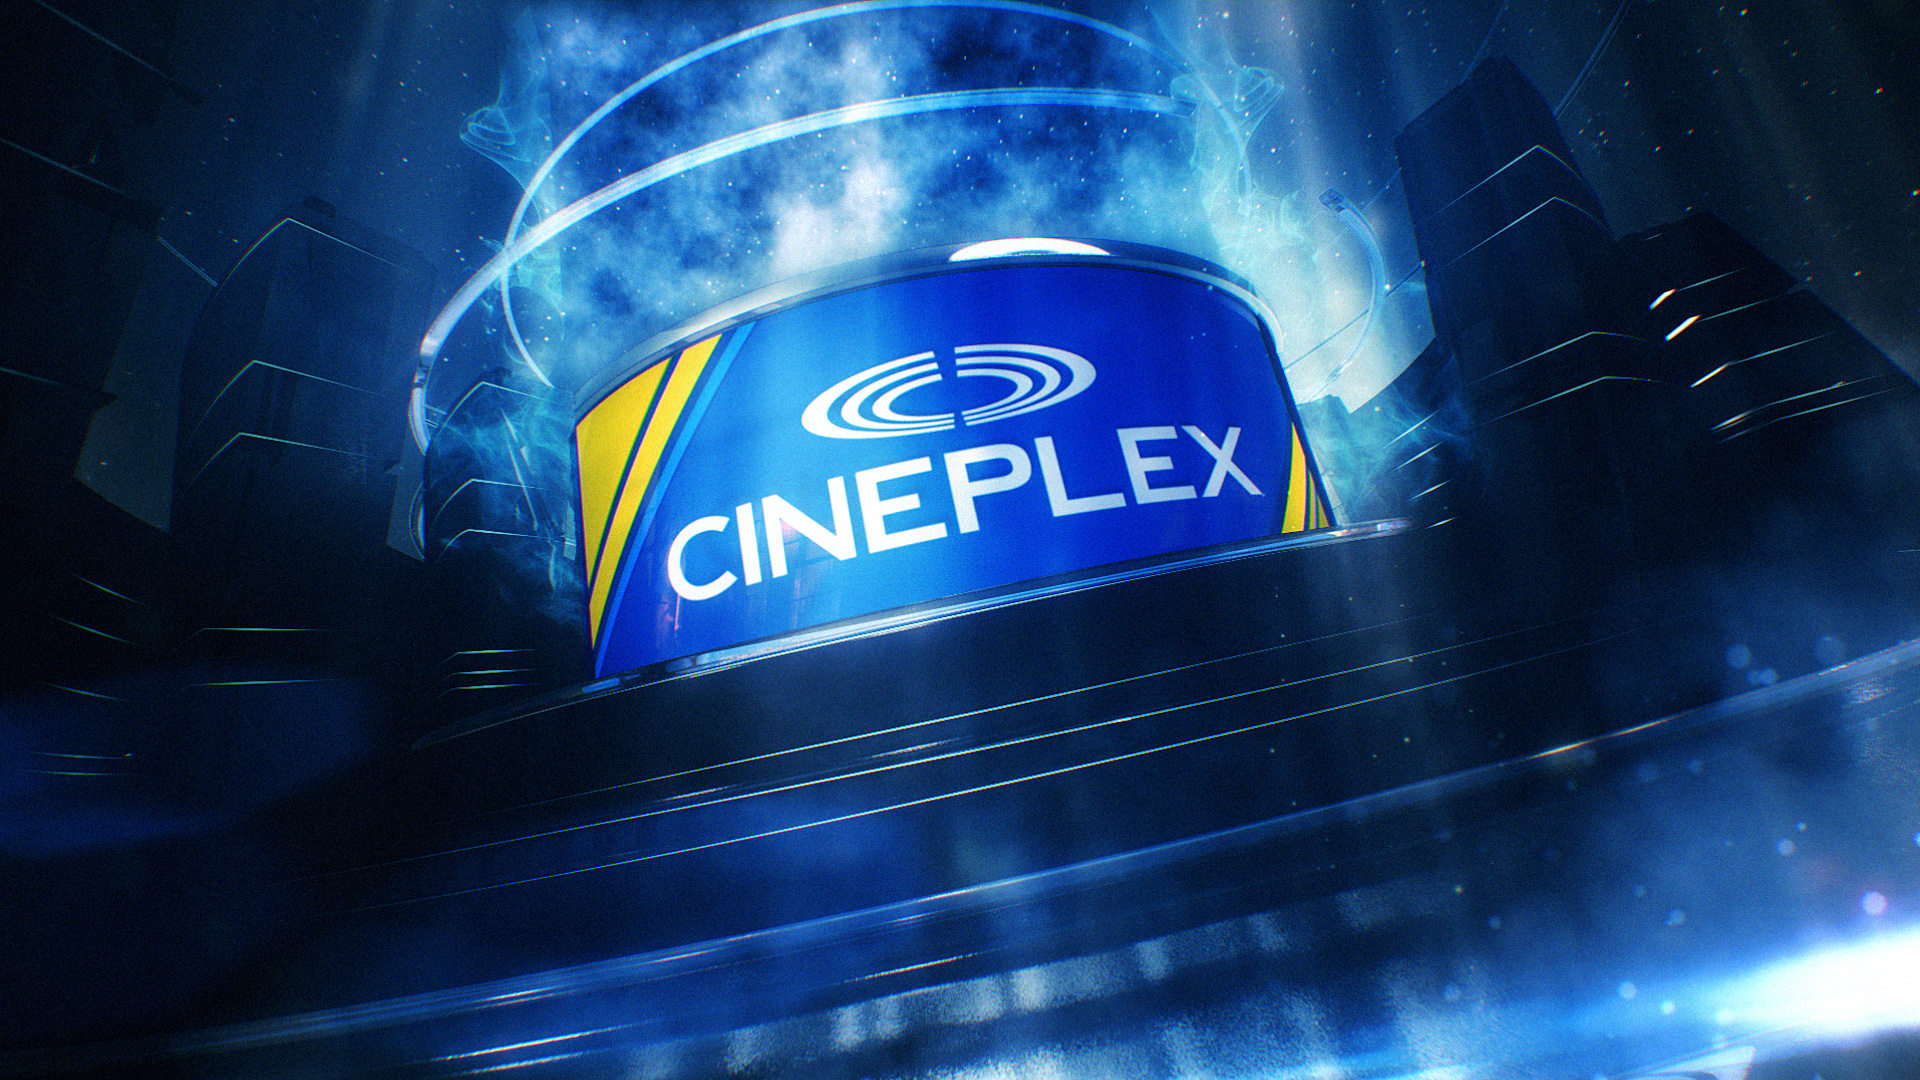 Cineplex Preshow Rebrand